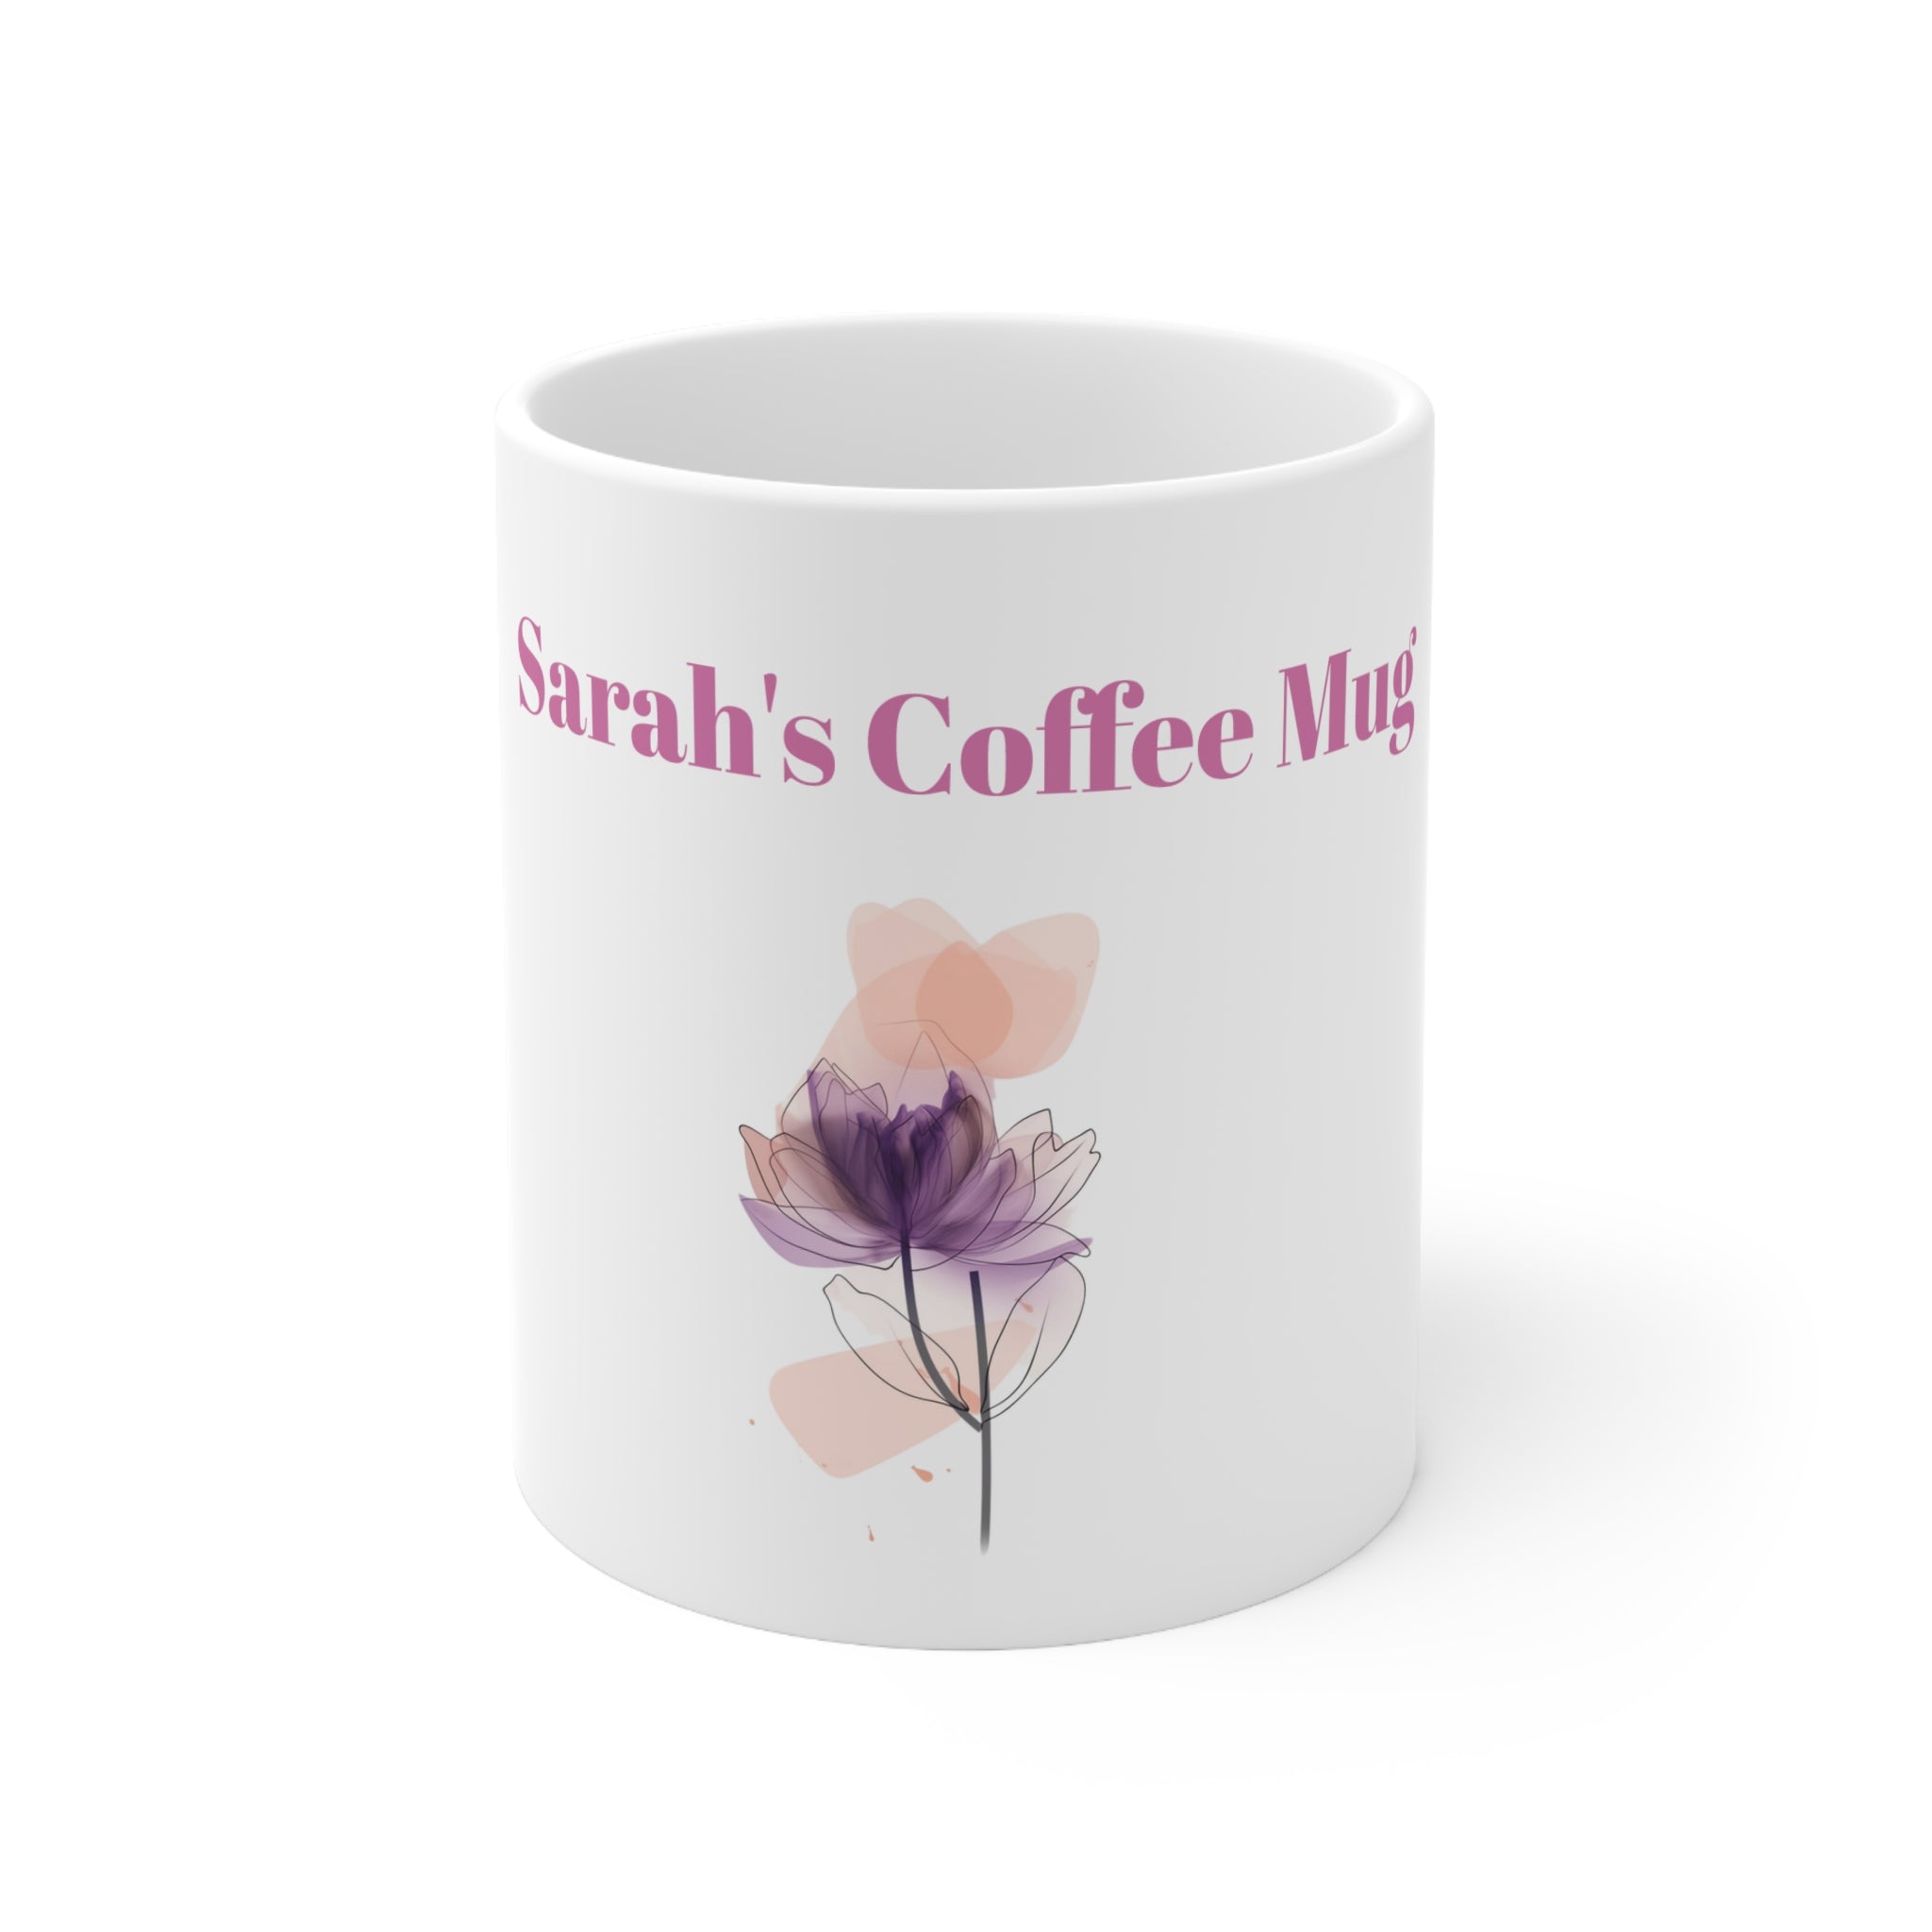 Sarah's Abstract floral, coffee mug, ceramic mug, flower design, handmade mug, unique gift for Sarah